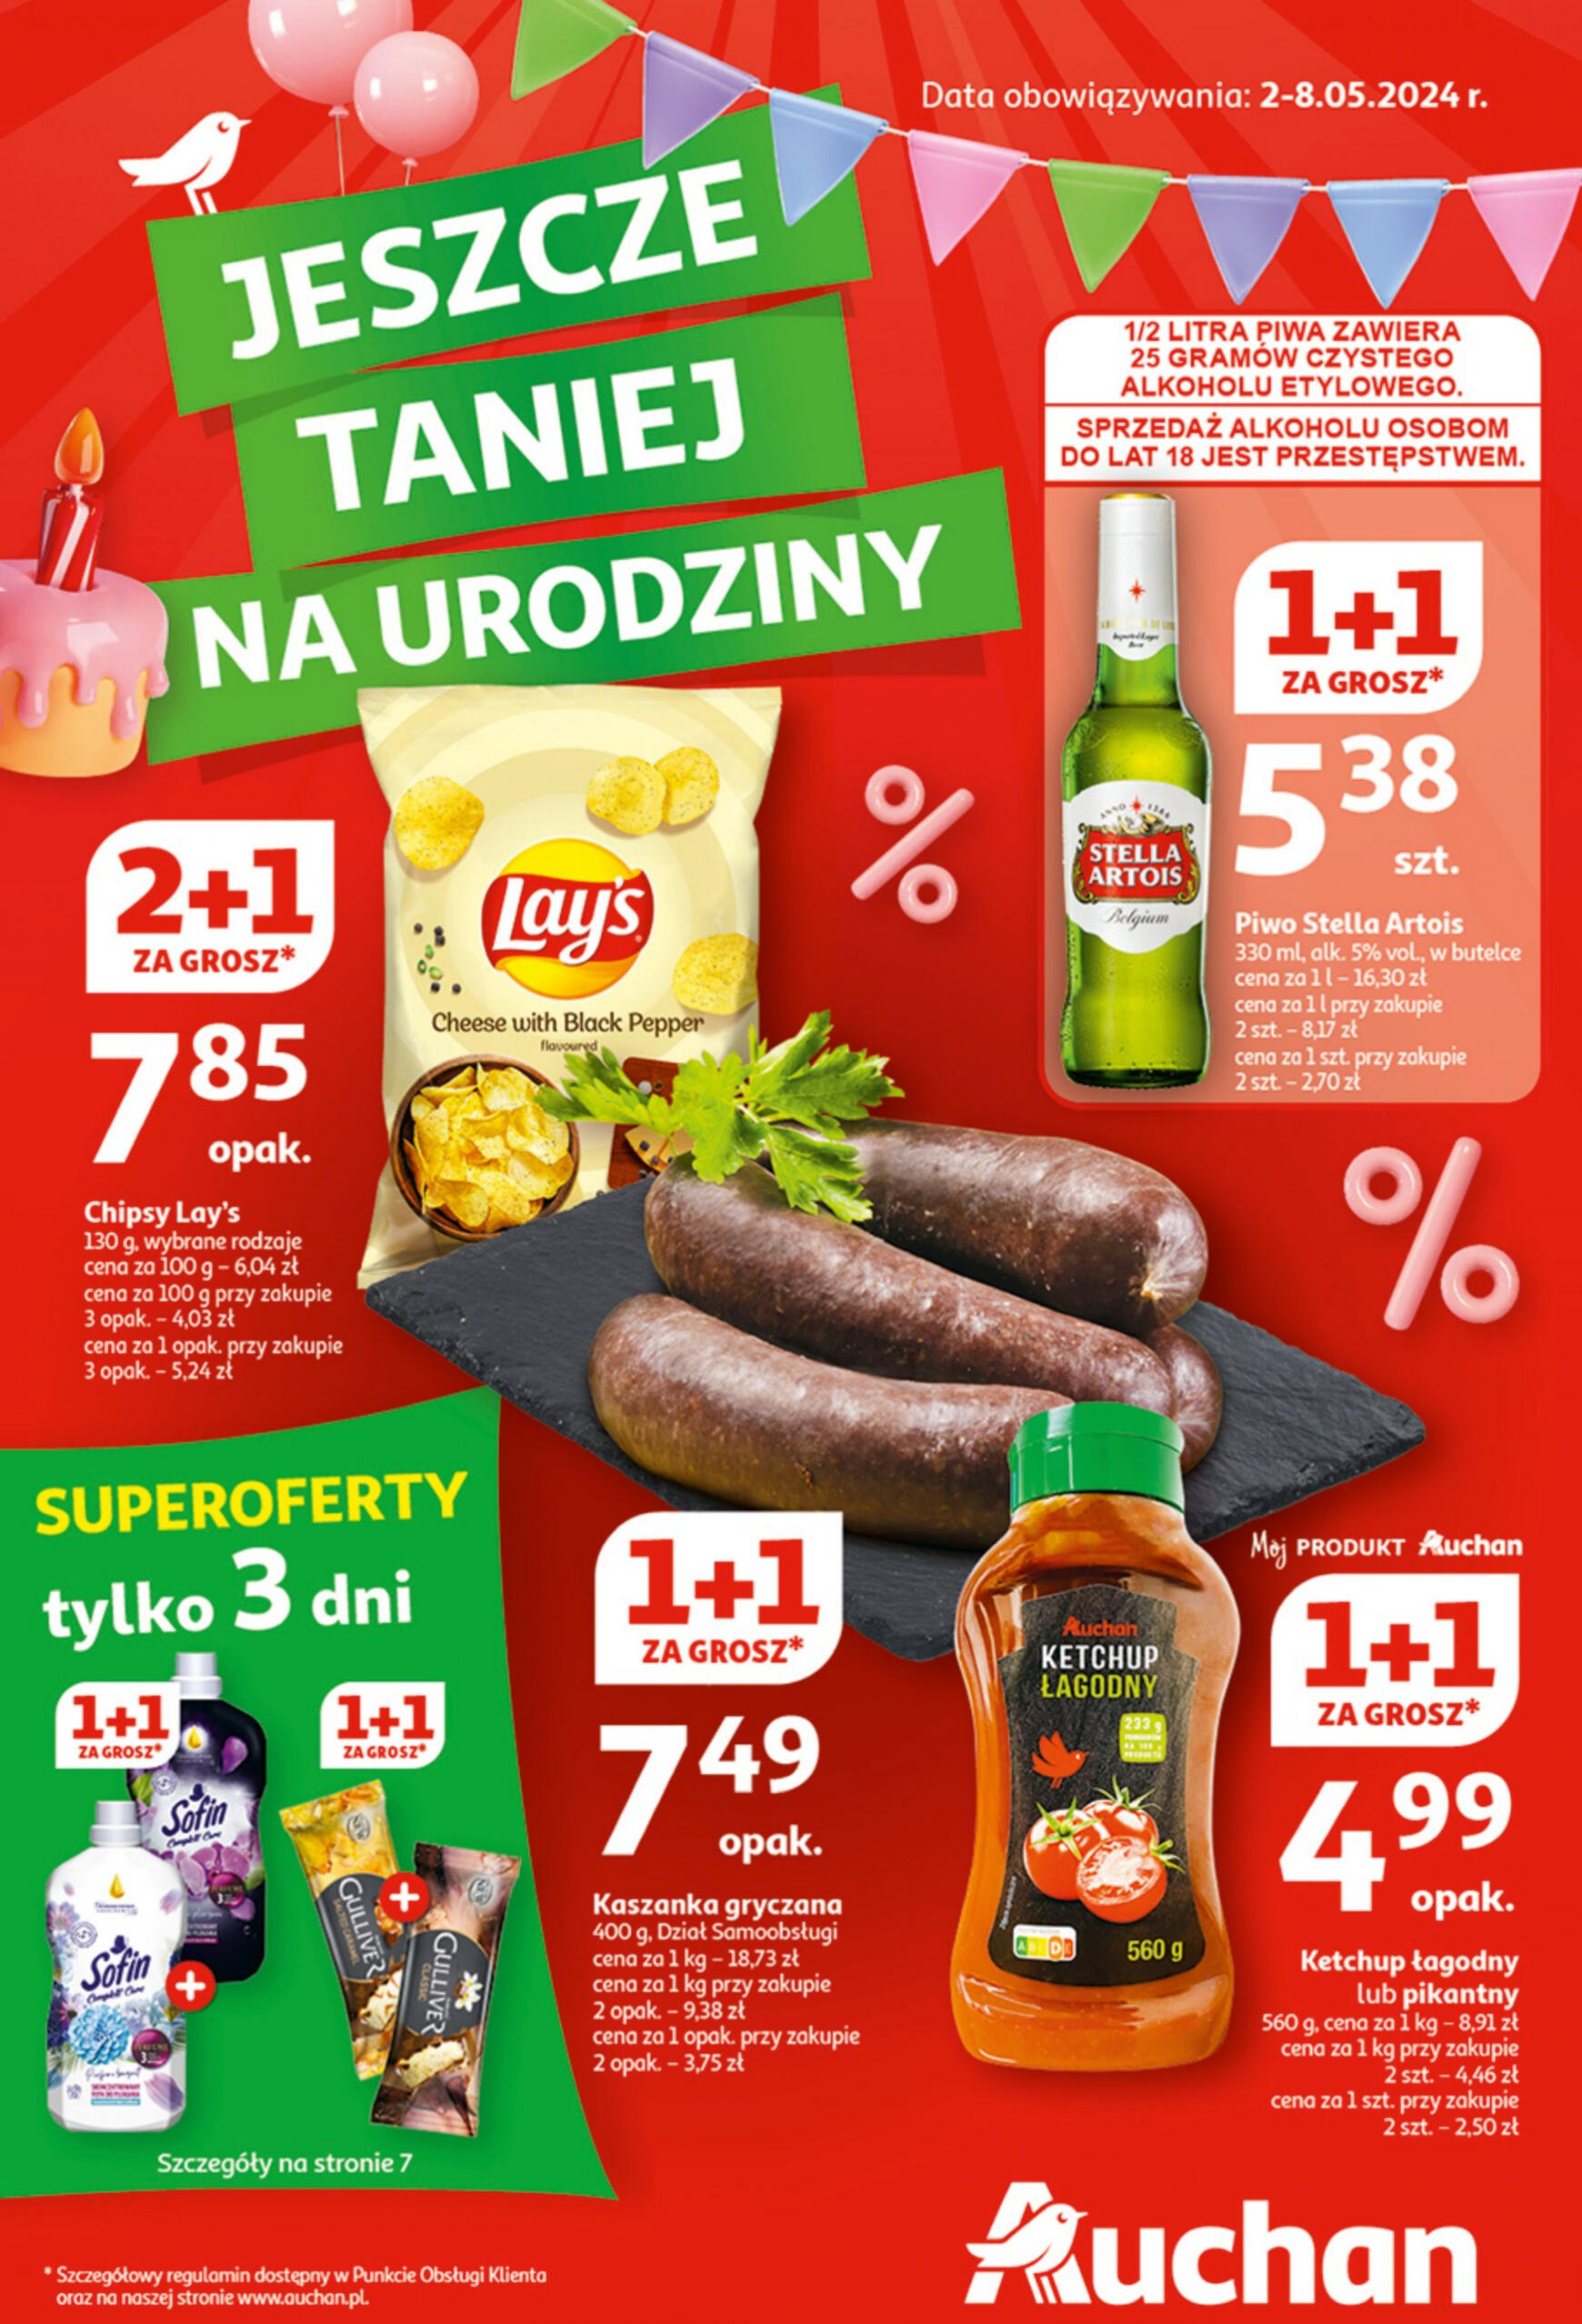 auchan - Hipermarket Auchan - Gazetka Jeszcze taniej na urodziny gazetka aktualna ważna od 02.05. - 08.05.